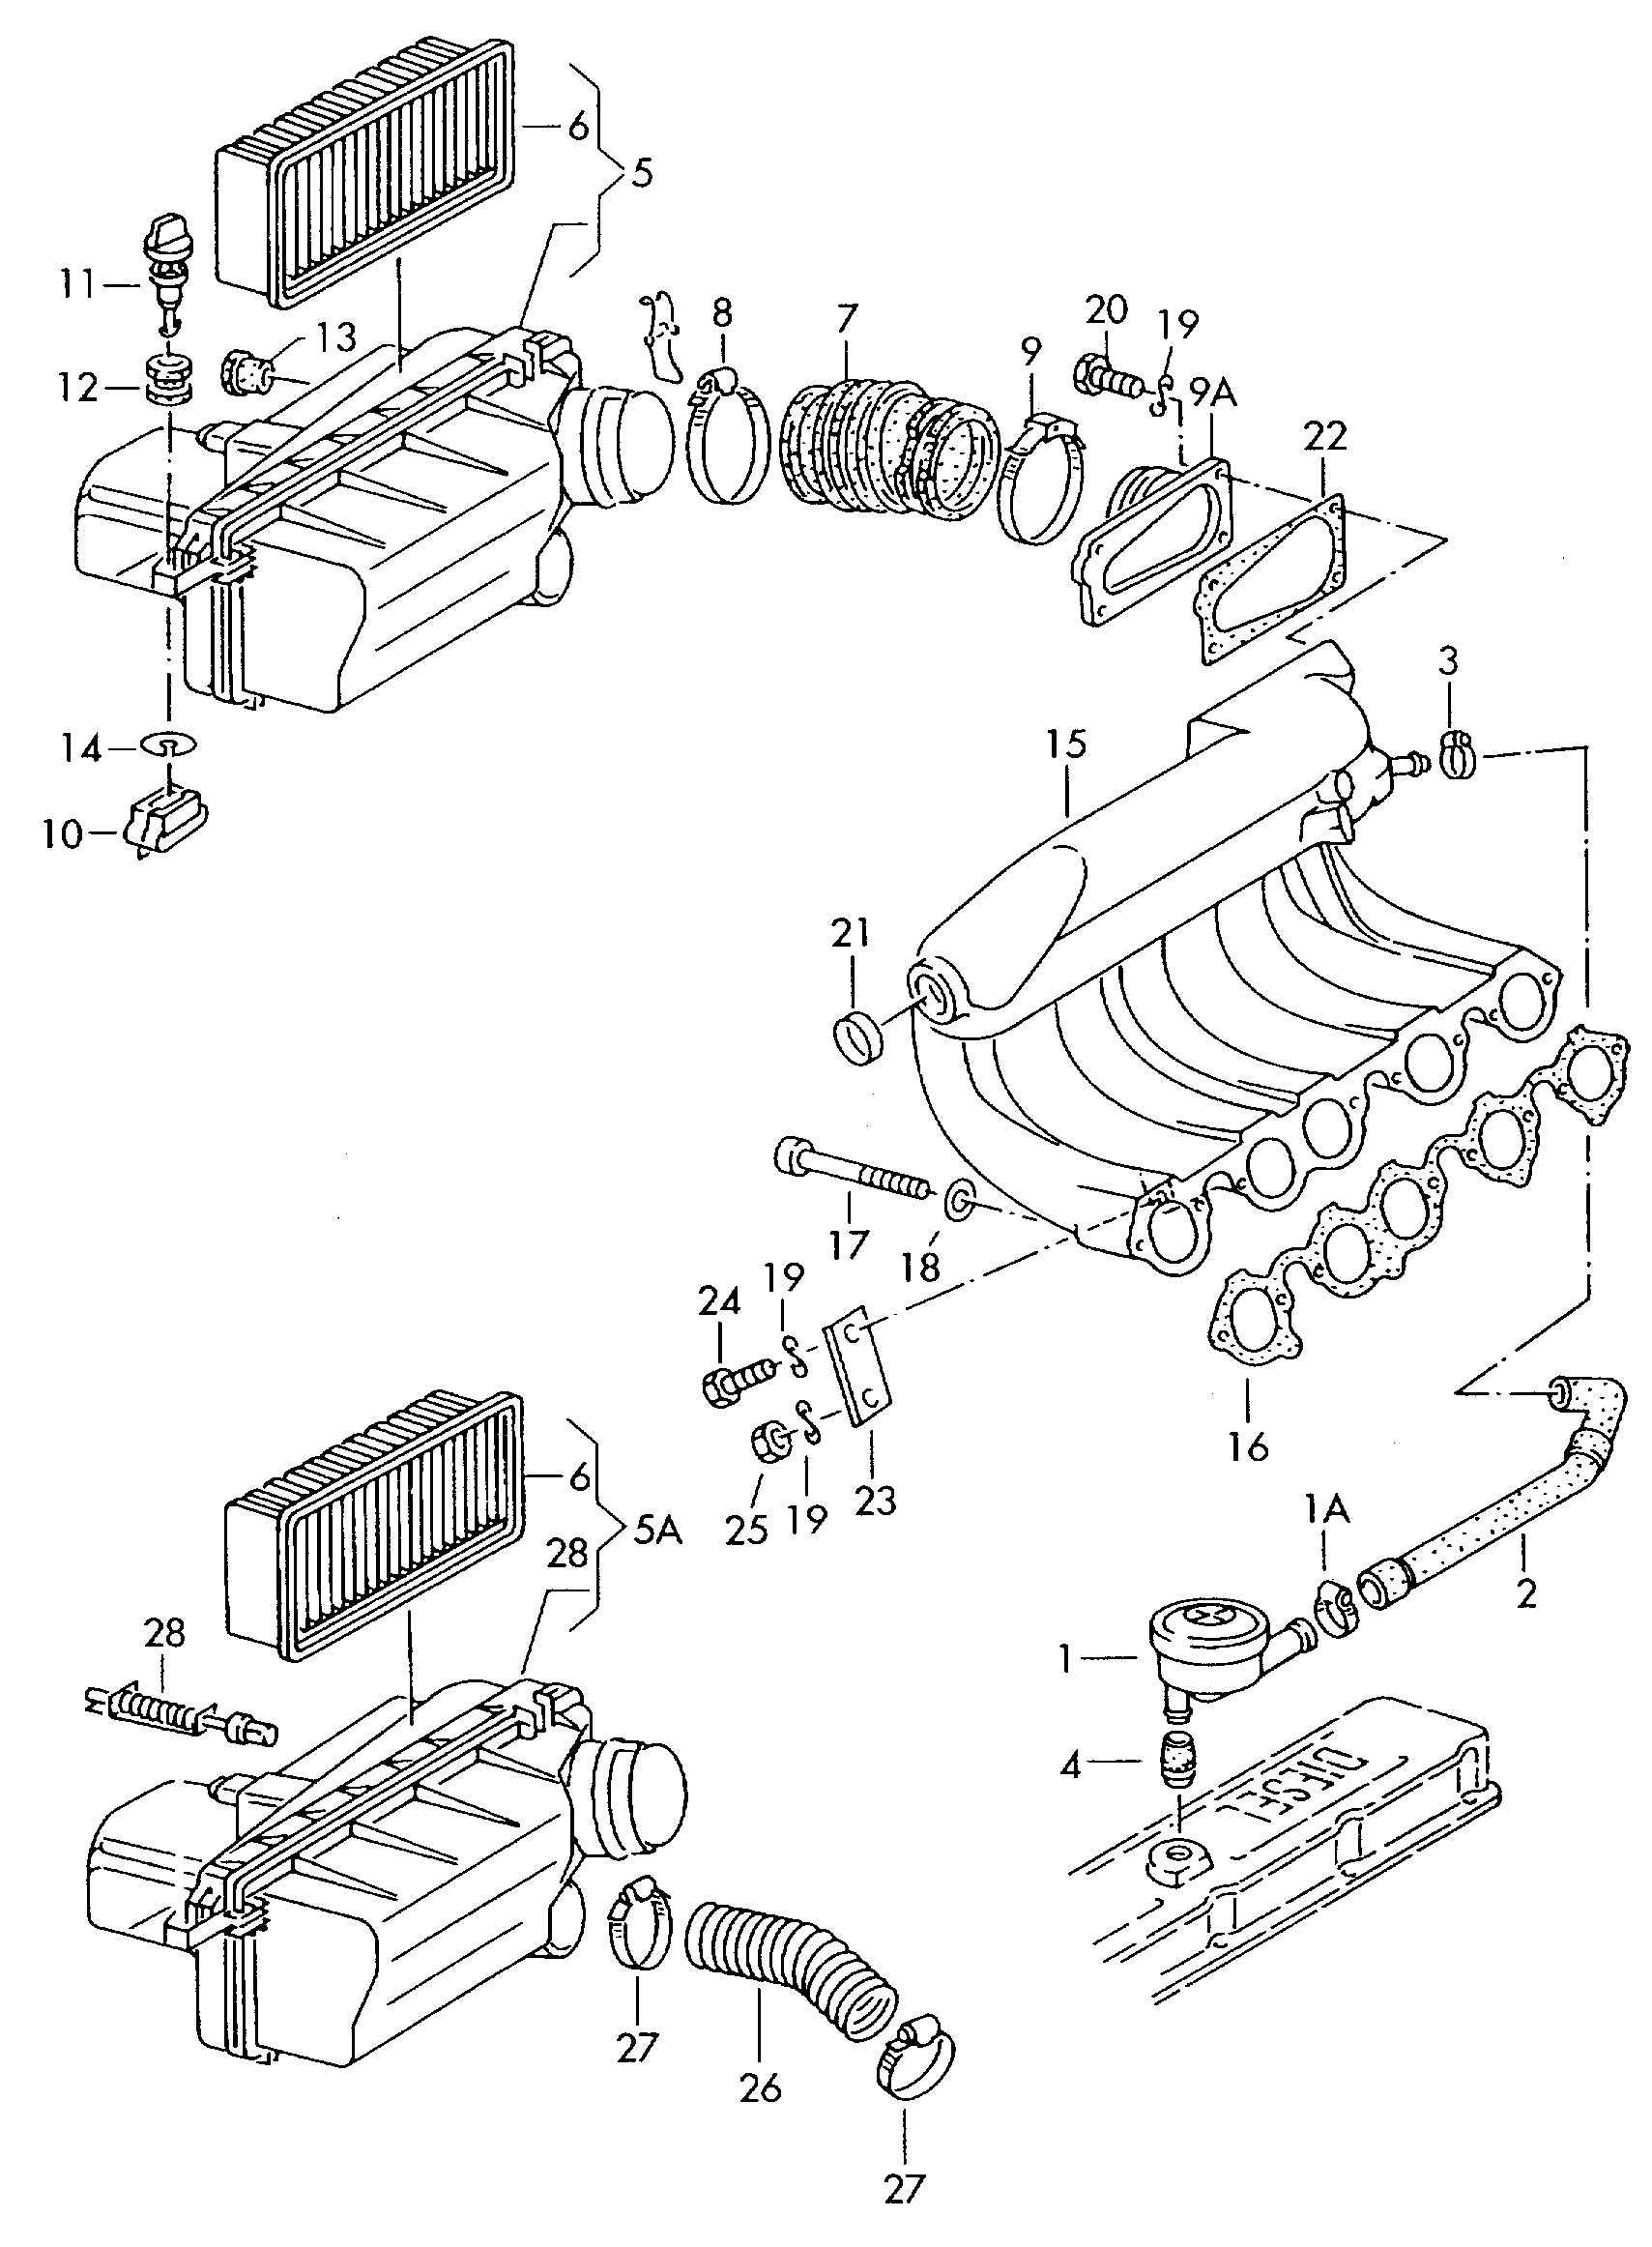 filtro de airevalvula reguladora de presionBoca de aspiracion 2,0l - Audi 100/Avant - a100